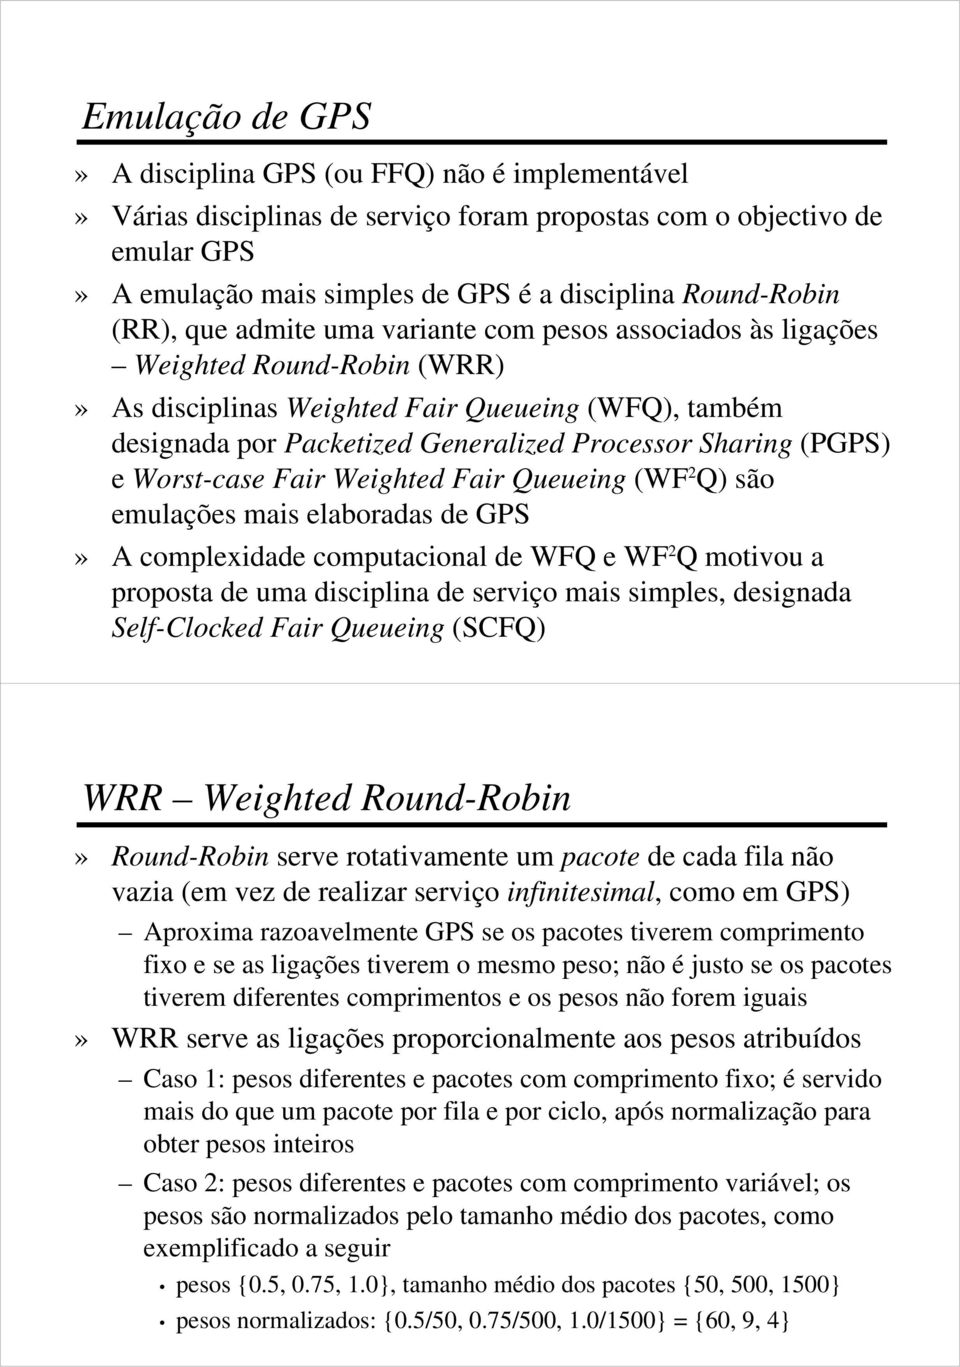 (PGPS) e Worst-case Fair Weighted Fair Queueing (WF 2 Q) são emulações mais elaboradas de GPS» A complexidade computacional de WFQ e WF 2 Q motivou a proposta de uma disciplina de serviço mais